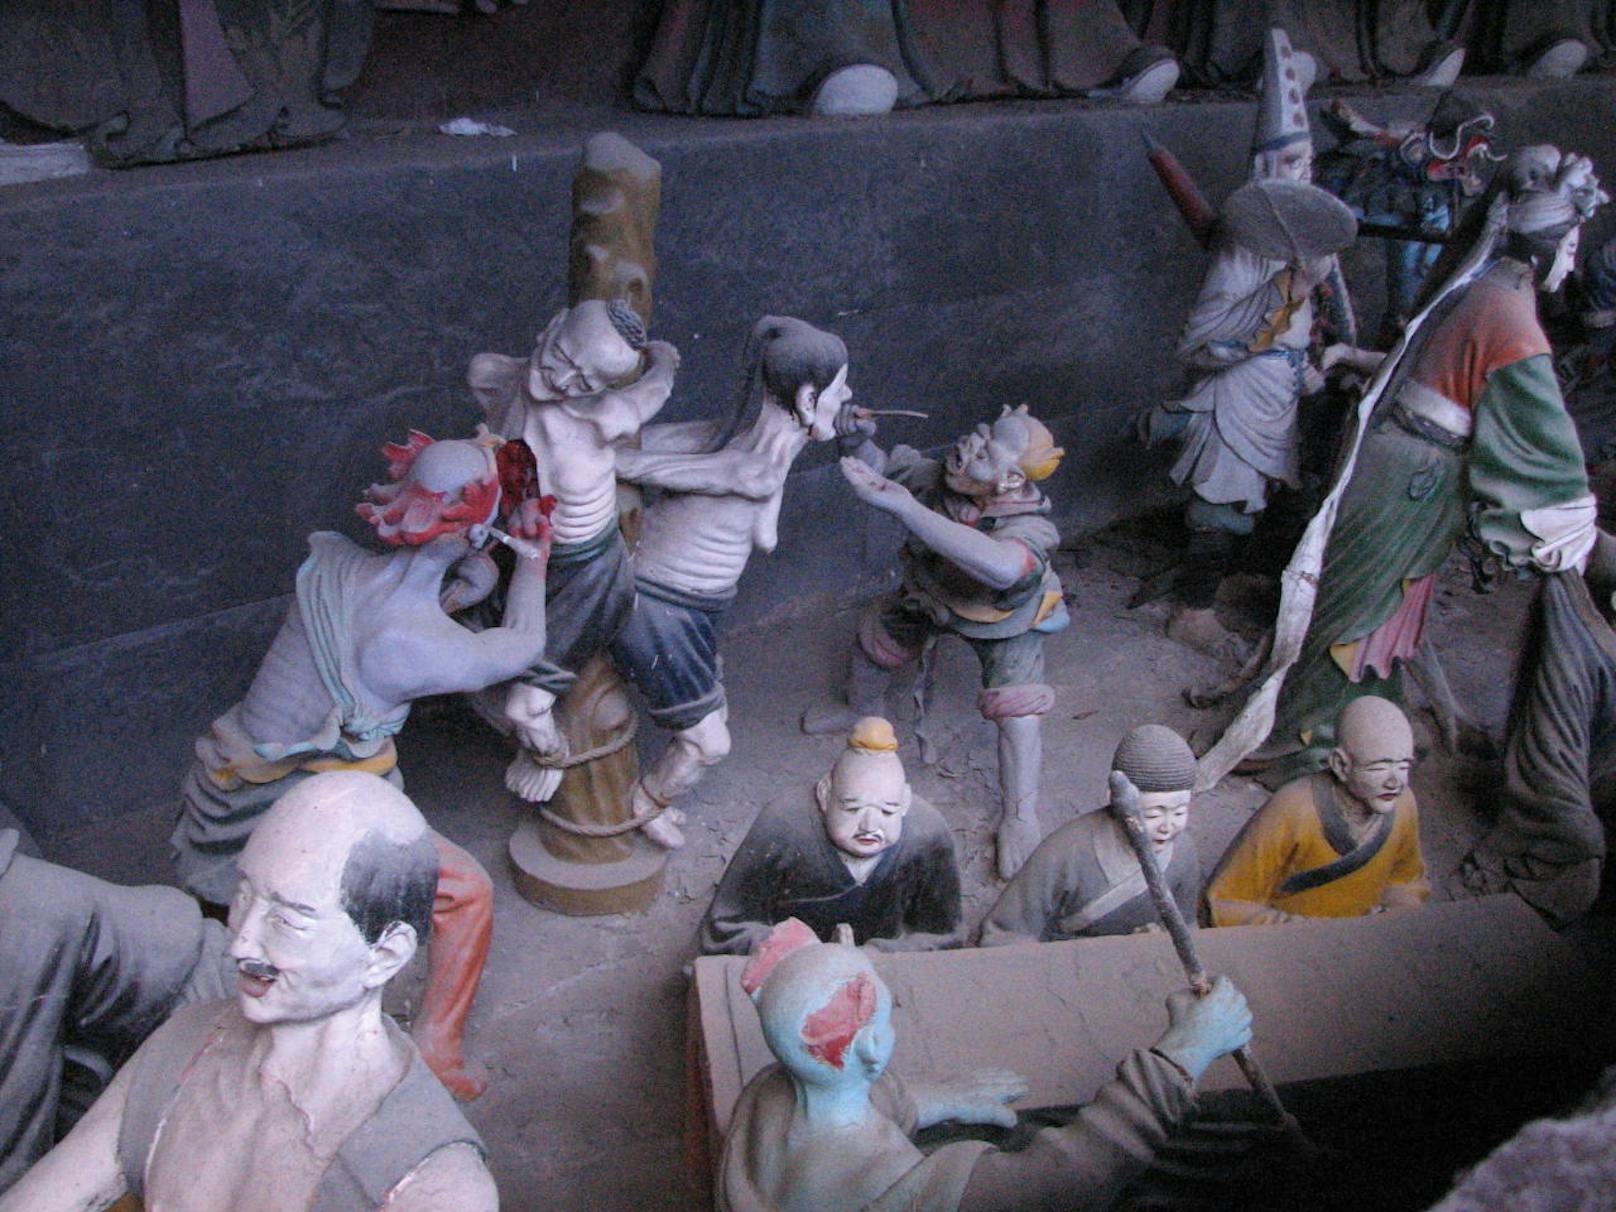 Die Statuen zeigen in grafischen Details, was mit Sündern nach ihrem Tod passiert. <a href="https://www.flickr.com/photos/alandmarie/">www.flickr.com/photos/alandmarie</a>